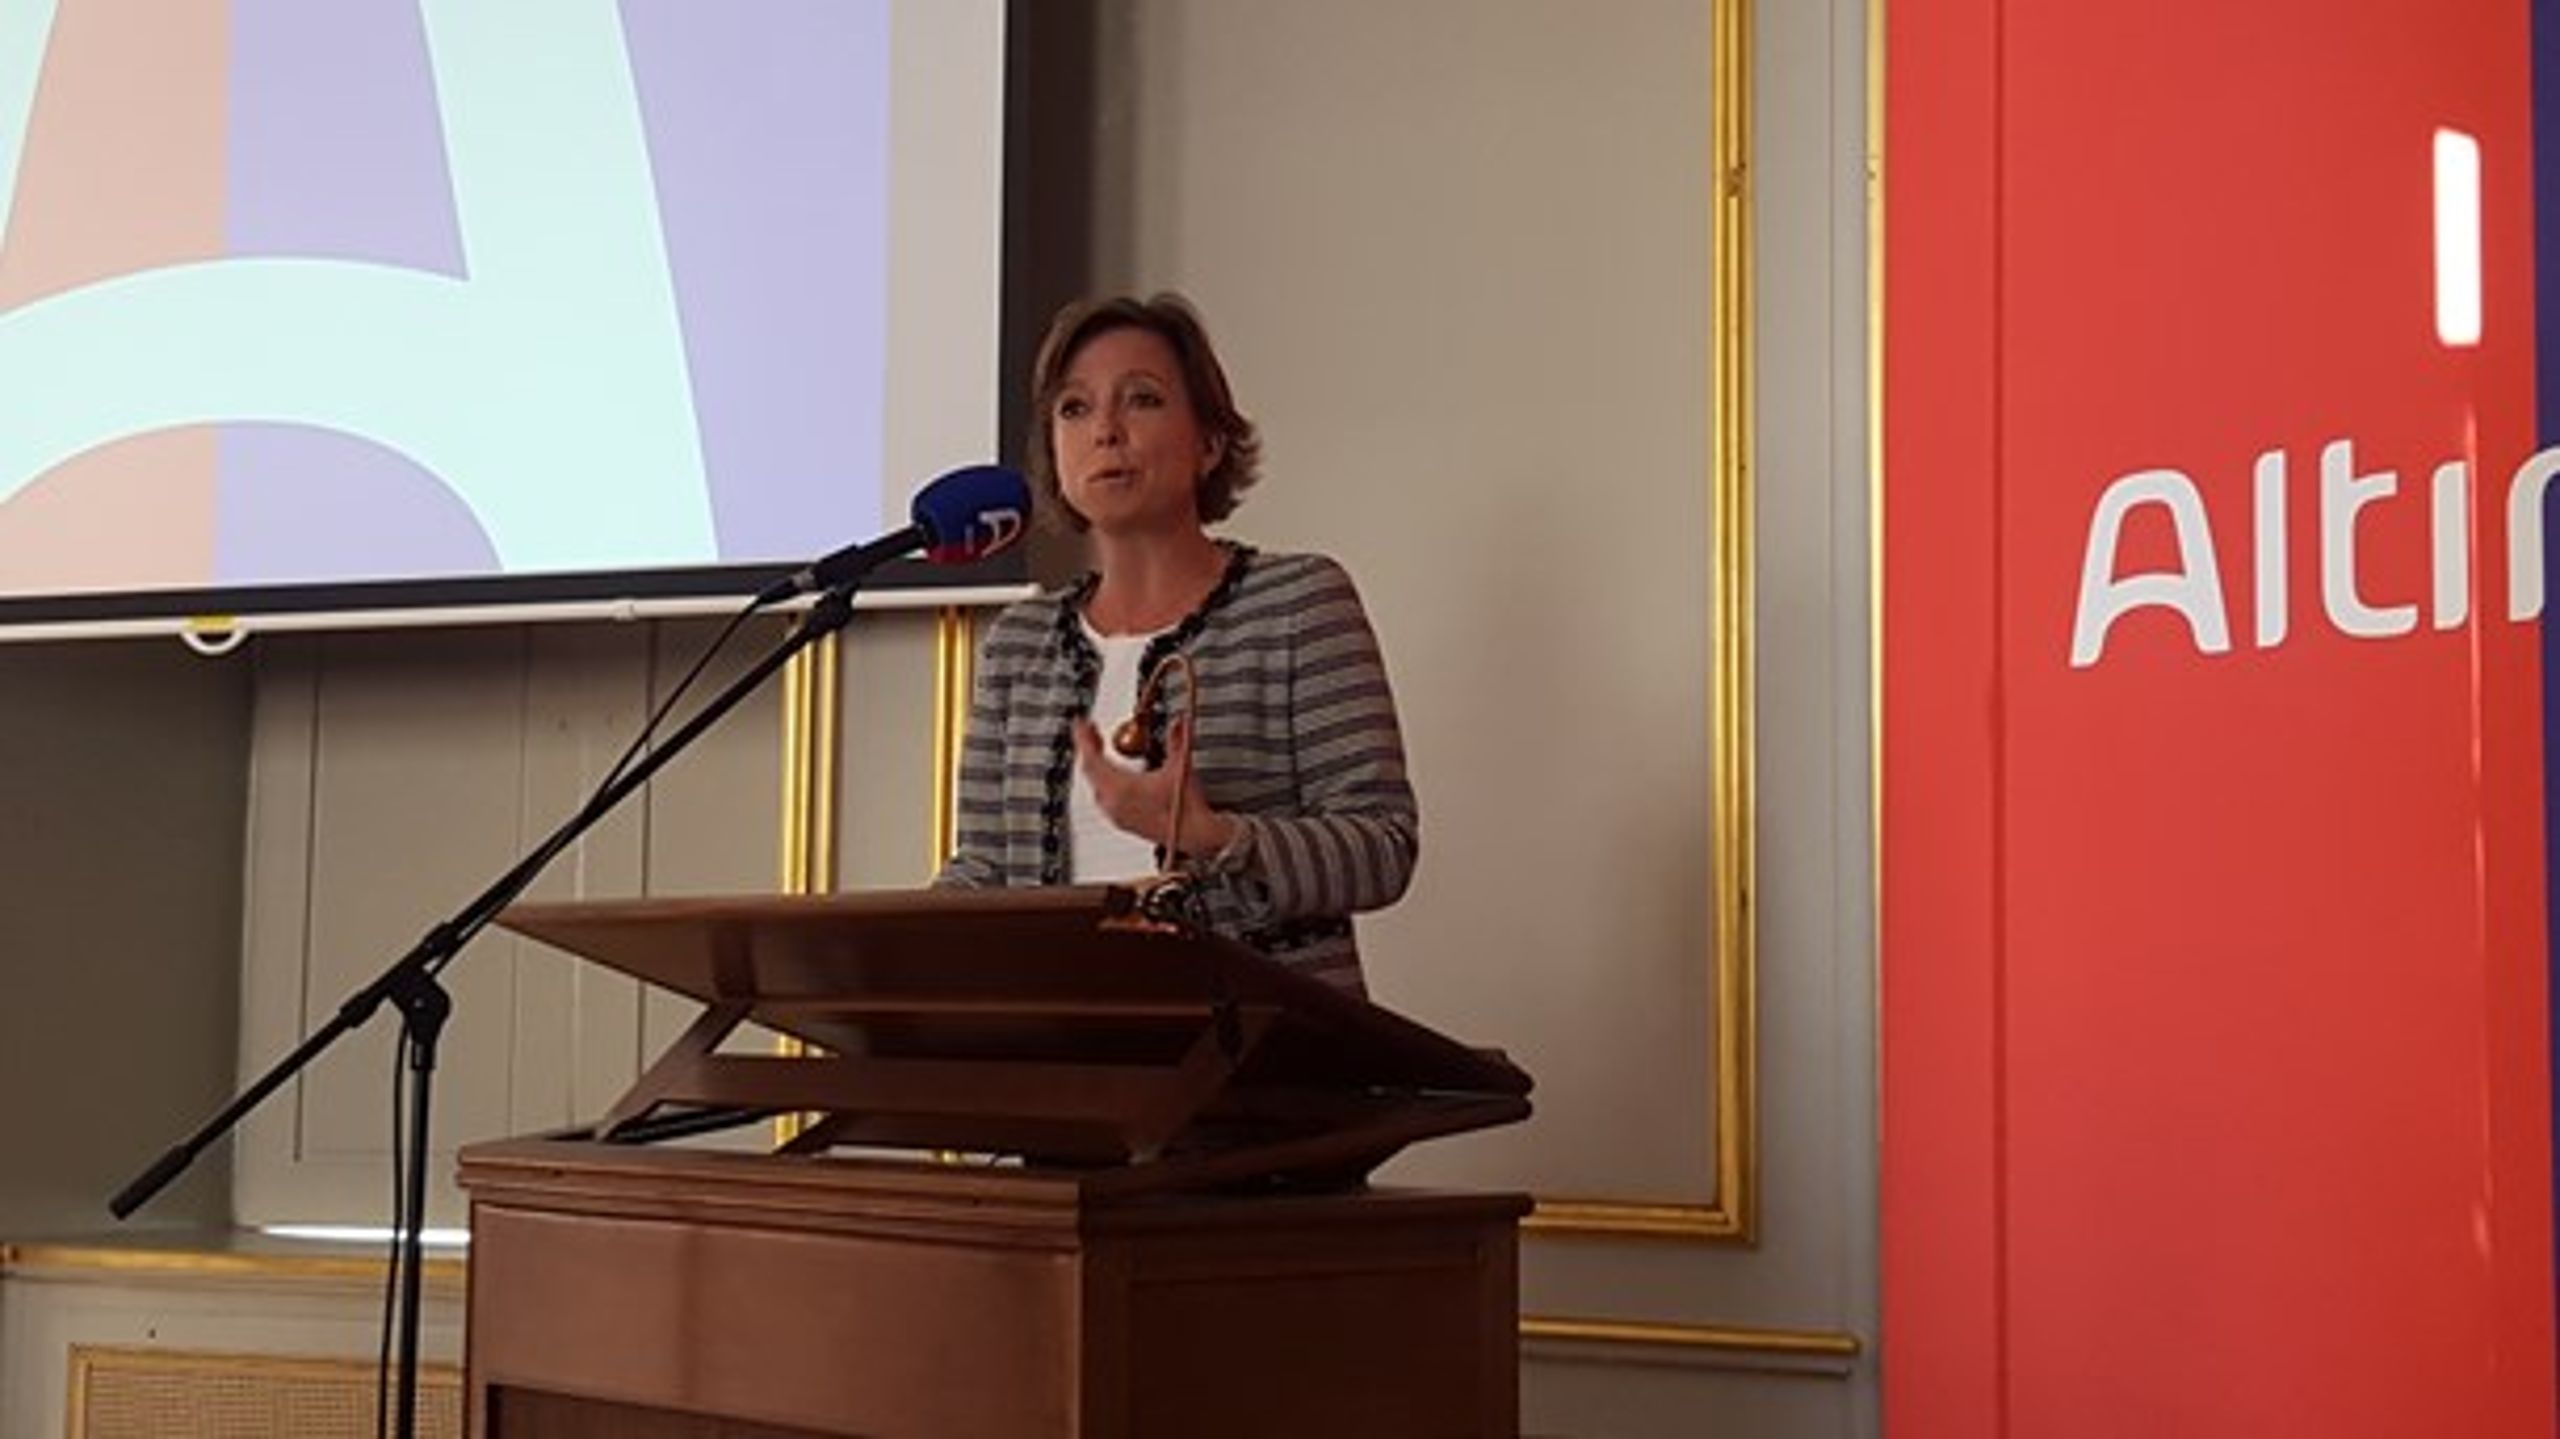 Altinget afholdt konference om retssikkerheden for samfundets svageste. Social- og indenrigsminister Karen Ellemann (V) var en af oplægsholderne.